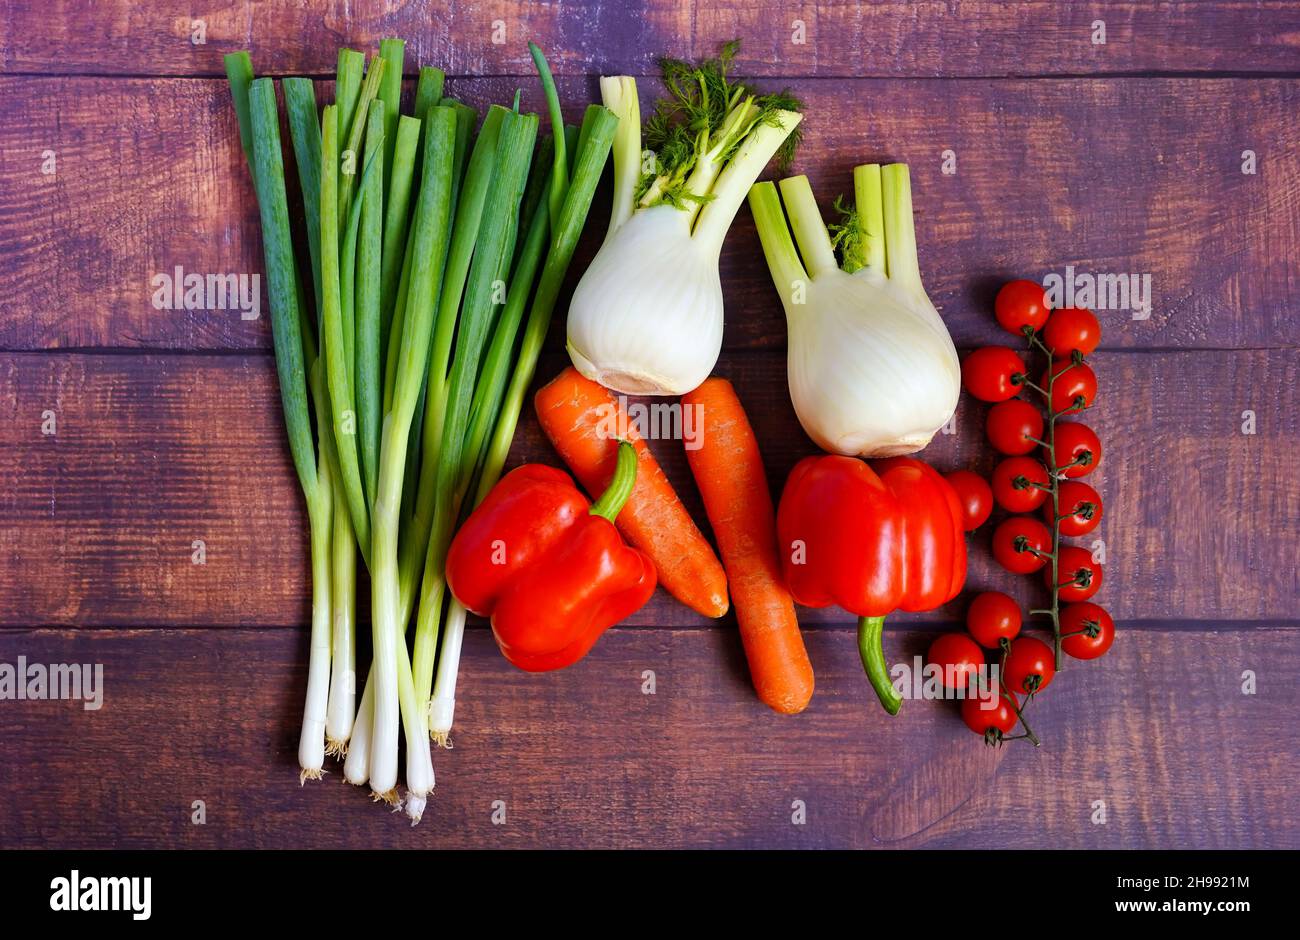 Cipolline fresche, finocchi, carote, pomodori e peperoni su un rustico tavolo di legno. Ingredienti sani per cucinare a casa per sostenere il sistema immunitario. Foto Stock